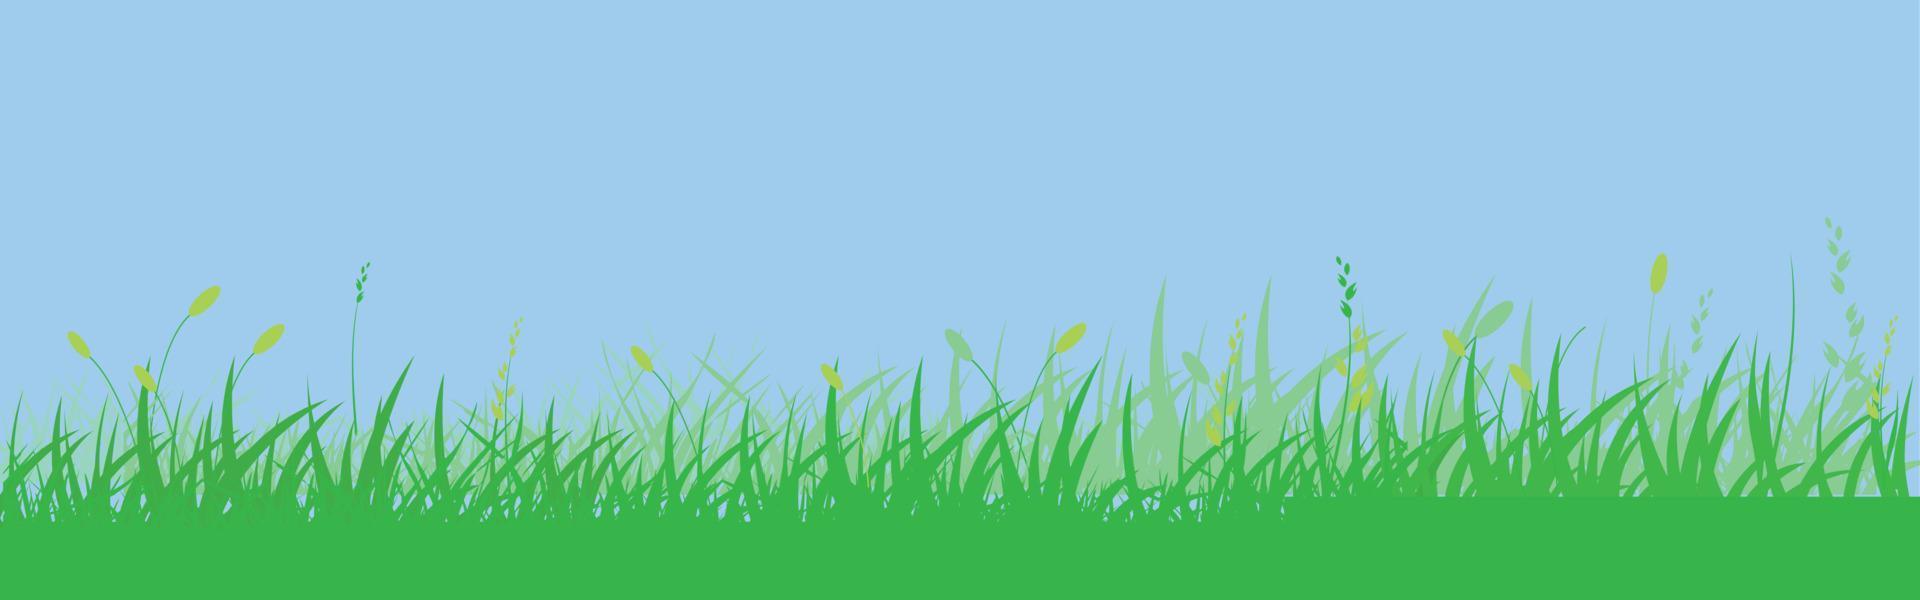 groen gras weide grens vector patroon. voorjaar of zomer fabriek veld- gazon. gras achtergrond.